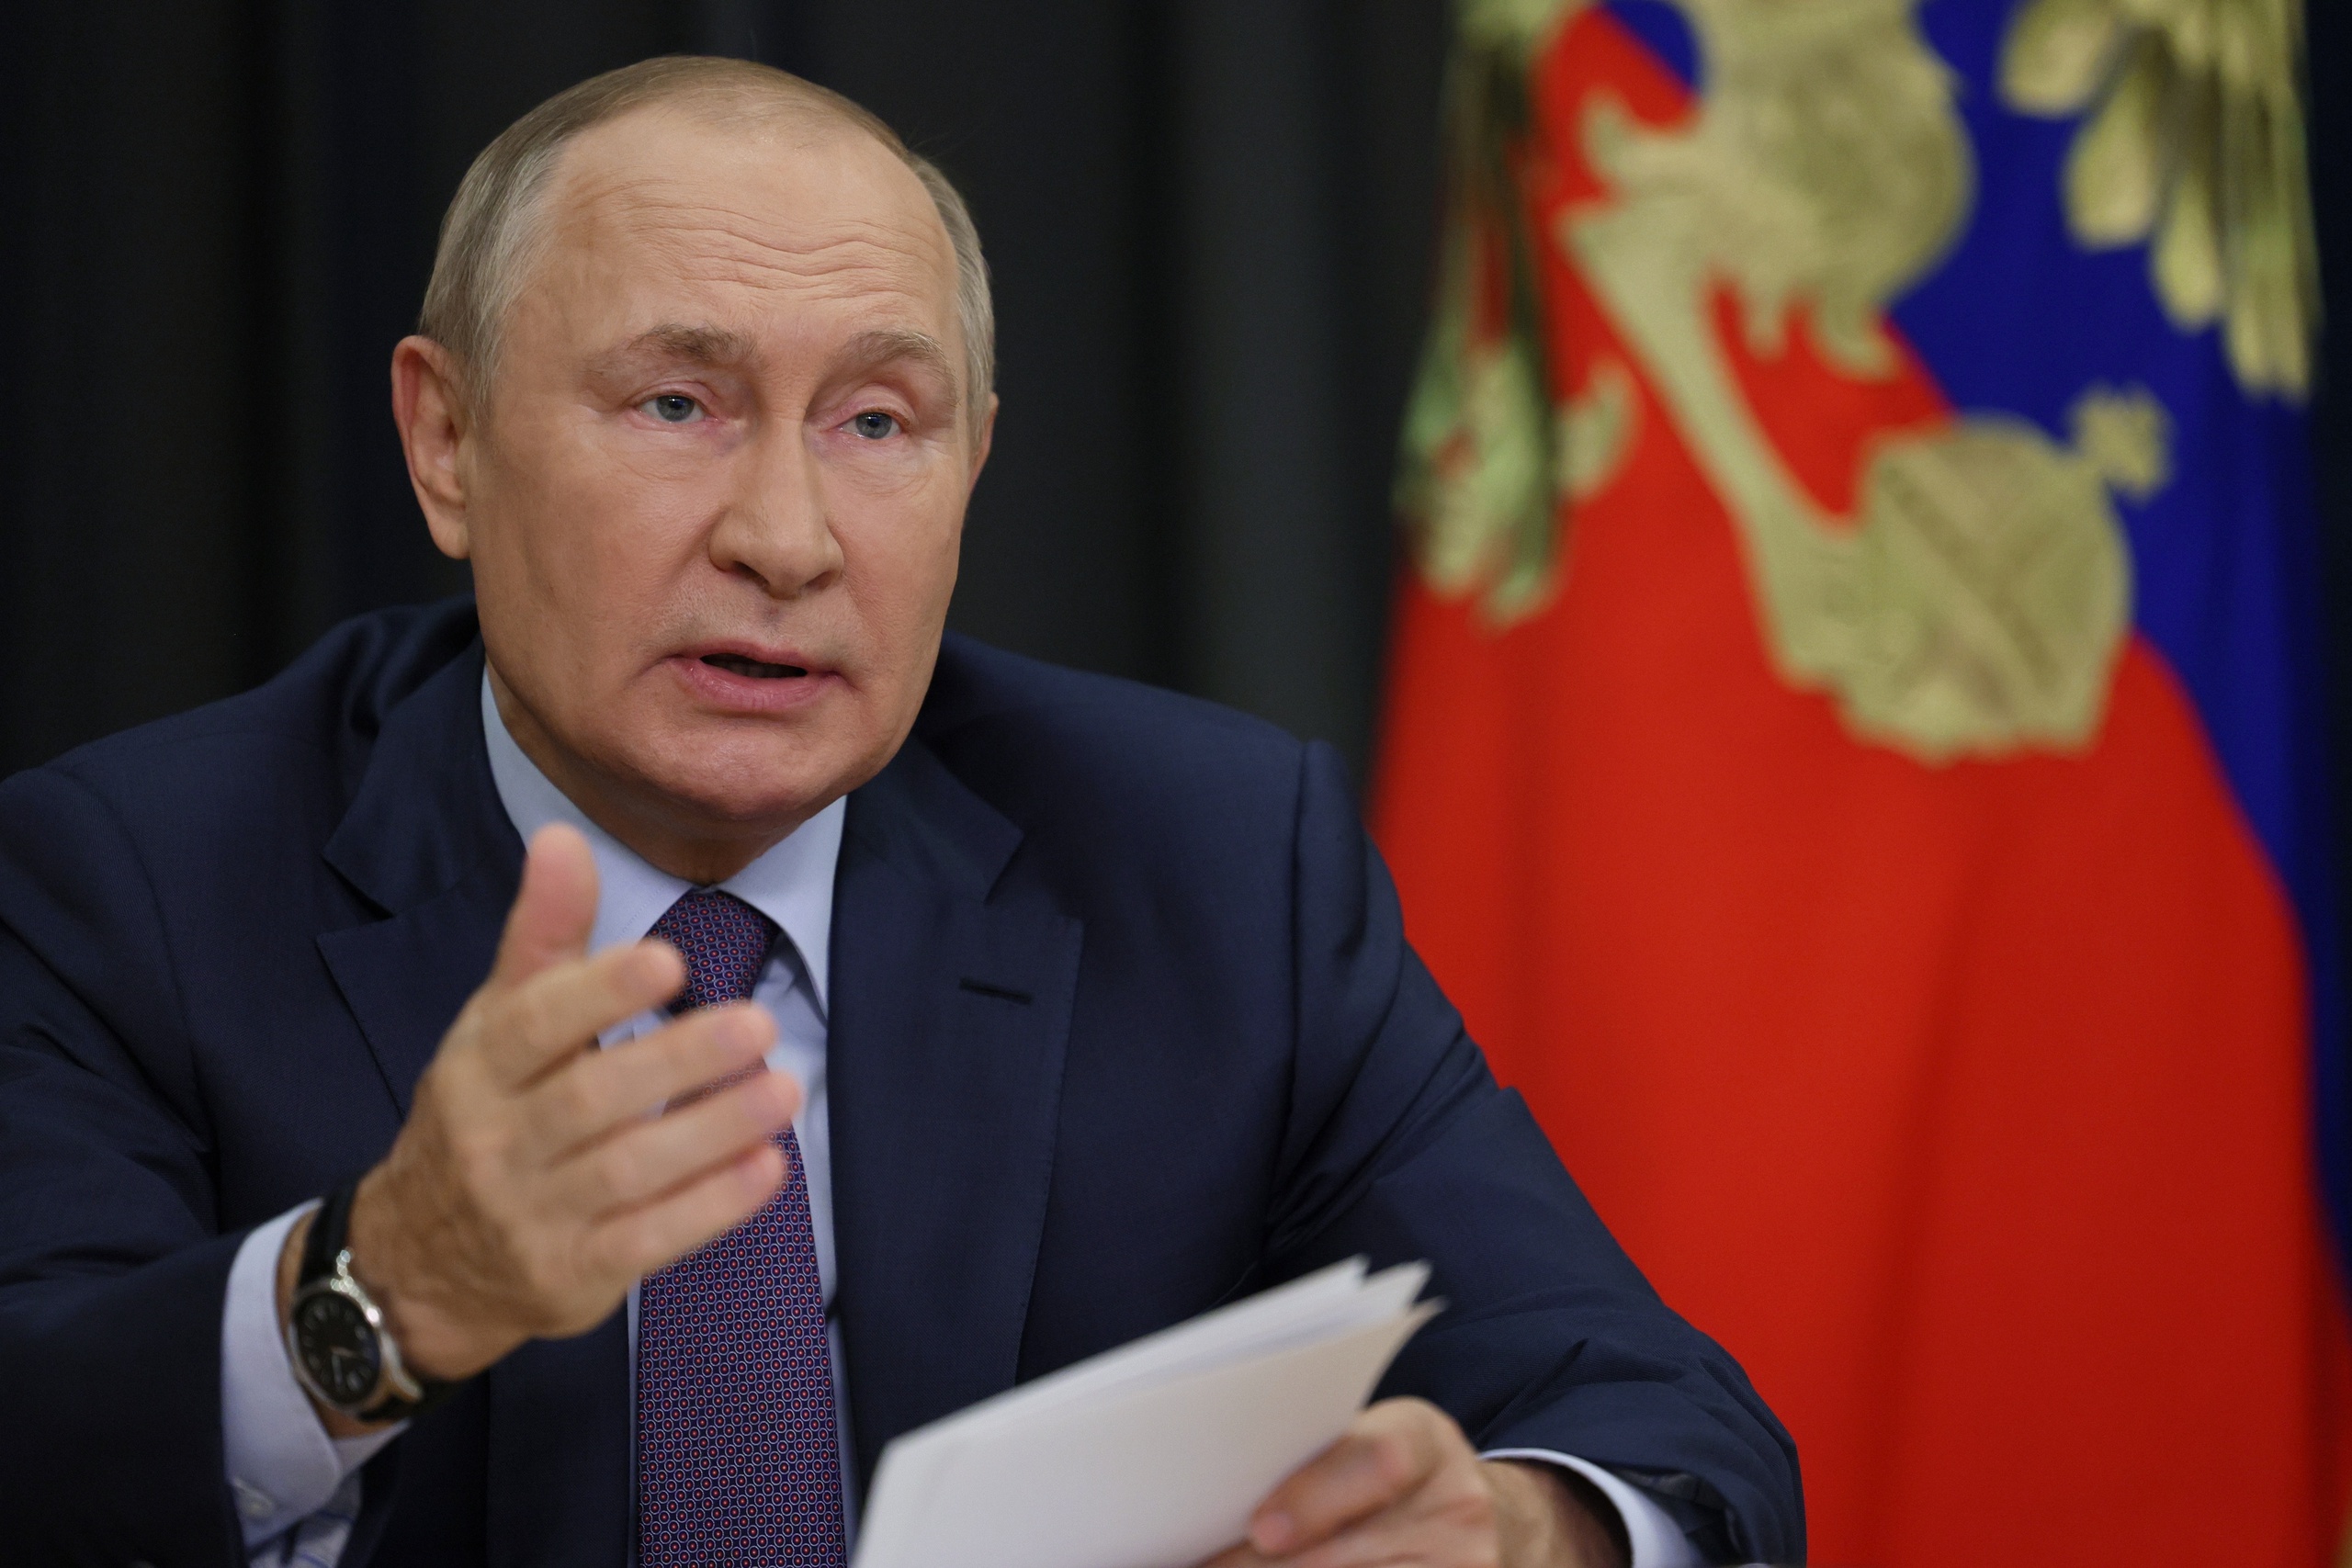 Poetin zal de annexatie mogelijk bekendmaken tijdens een toespraak voor de Doema, het Russische parlement. 'De vorm van de annexatie is nog wel de vraag', zegt Europaverslaggever Geert Jan Hahn. 